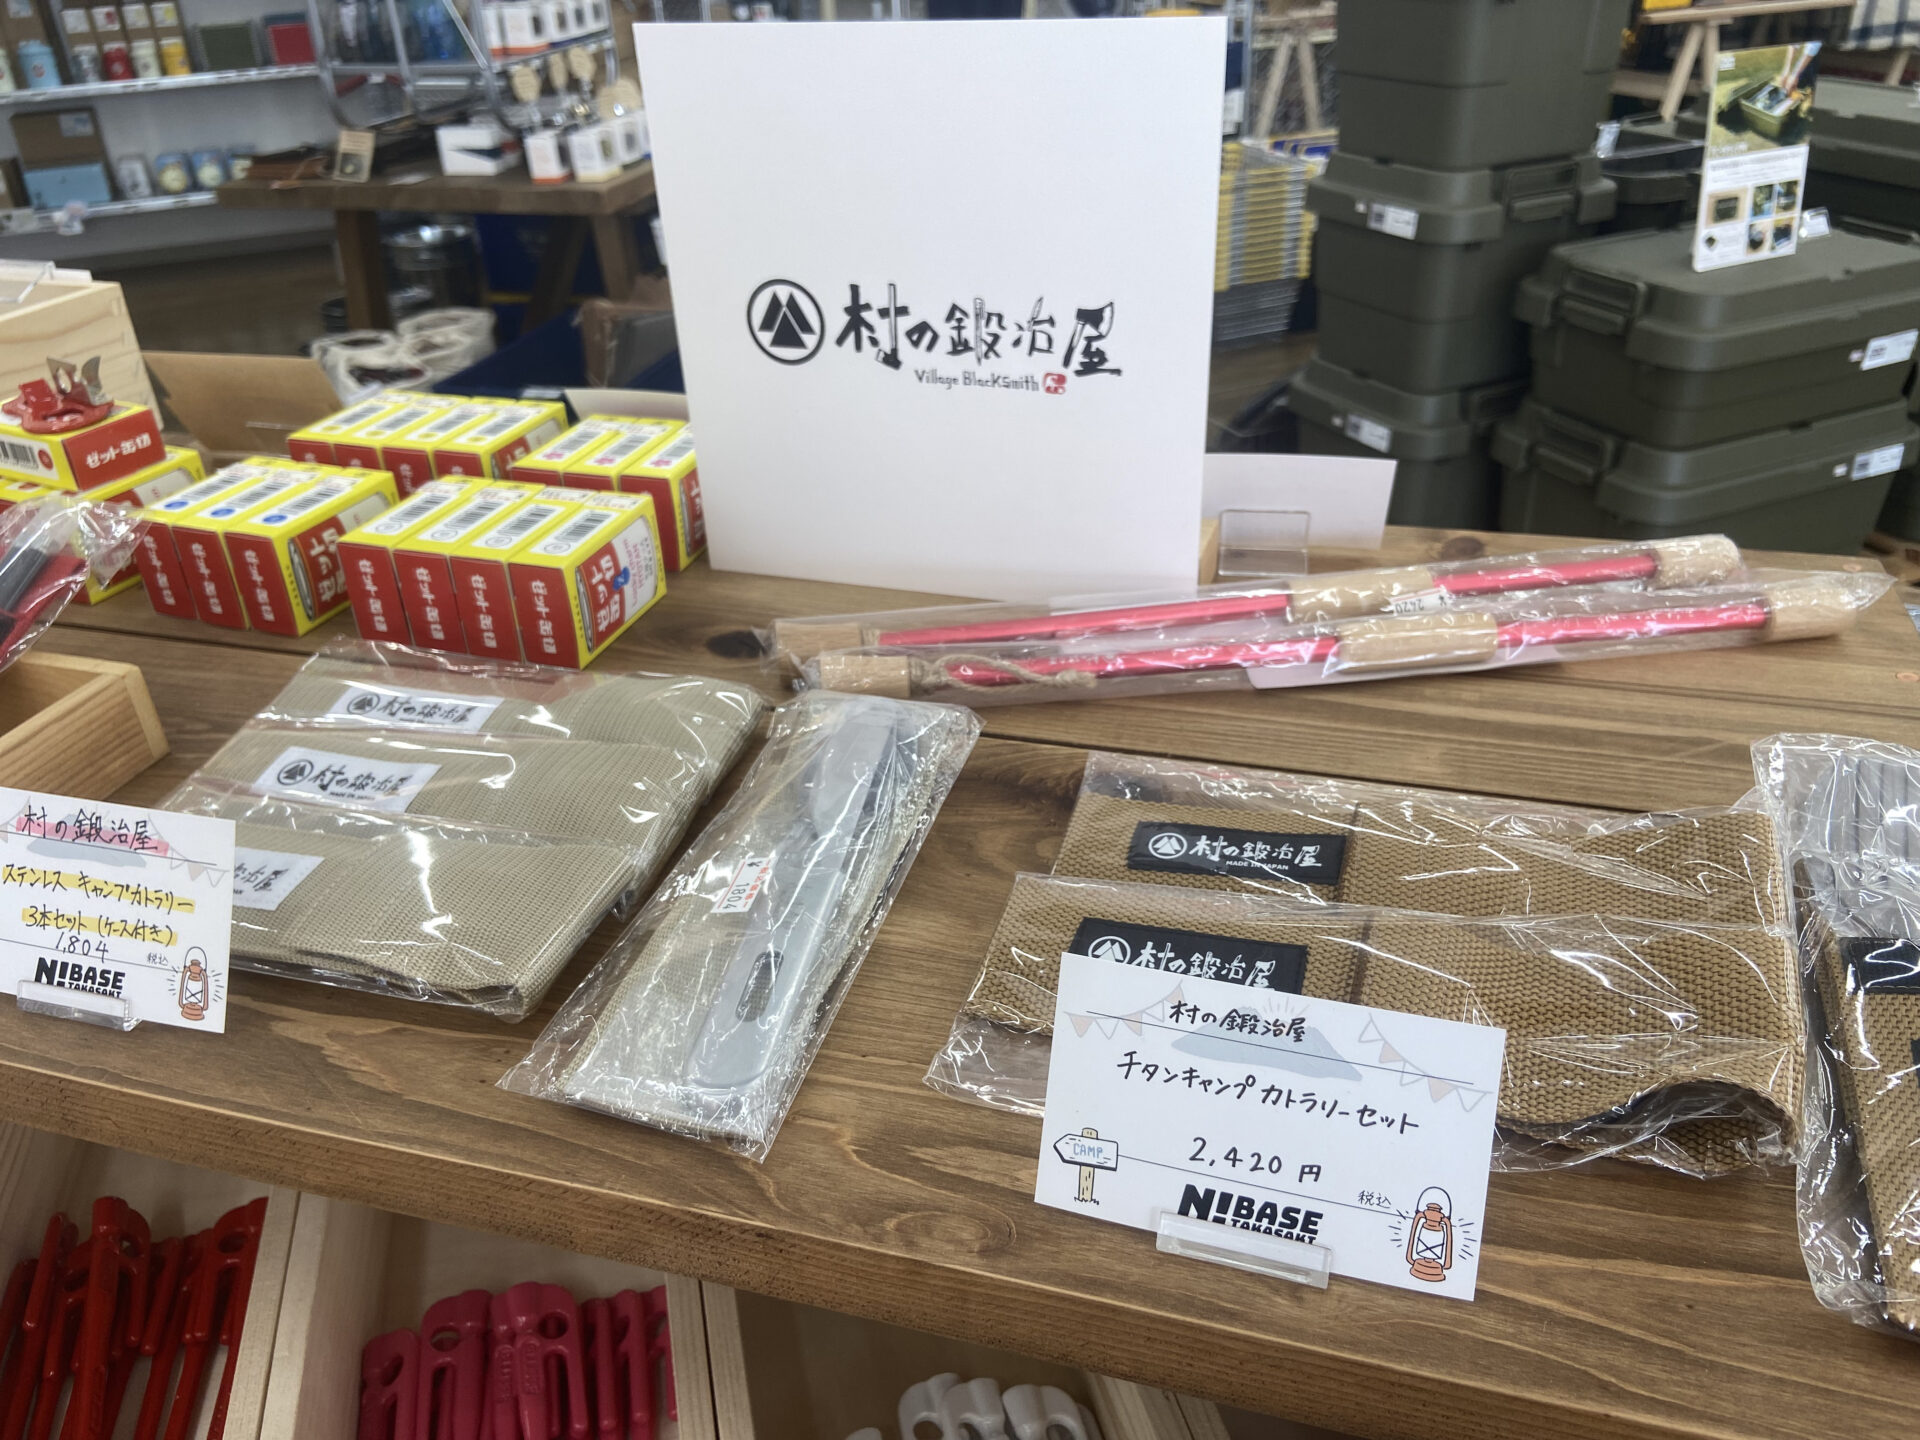 N!BASETAKASAKIに並ぶ村の鍛冶屋の商品とポップ